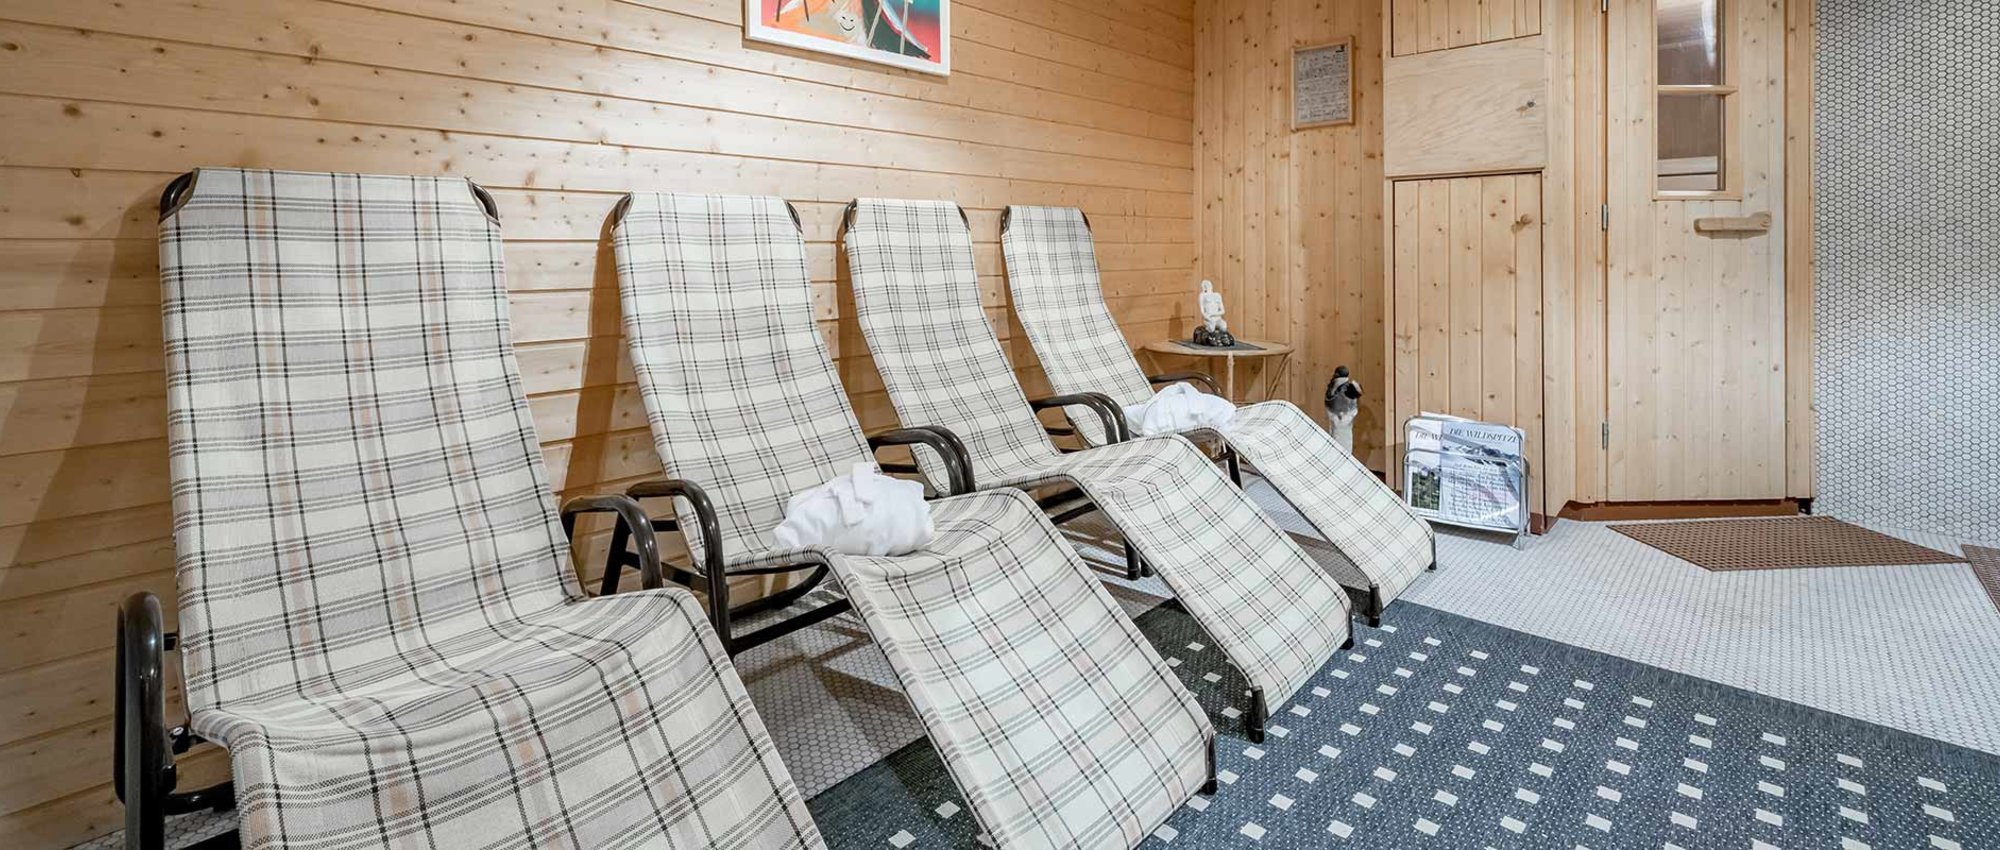 Sauna & infrared at Haus Wiesenblick in Ötztal